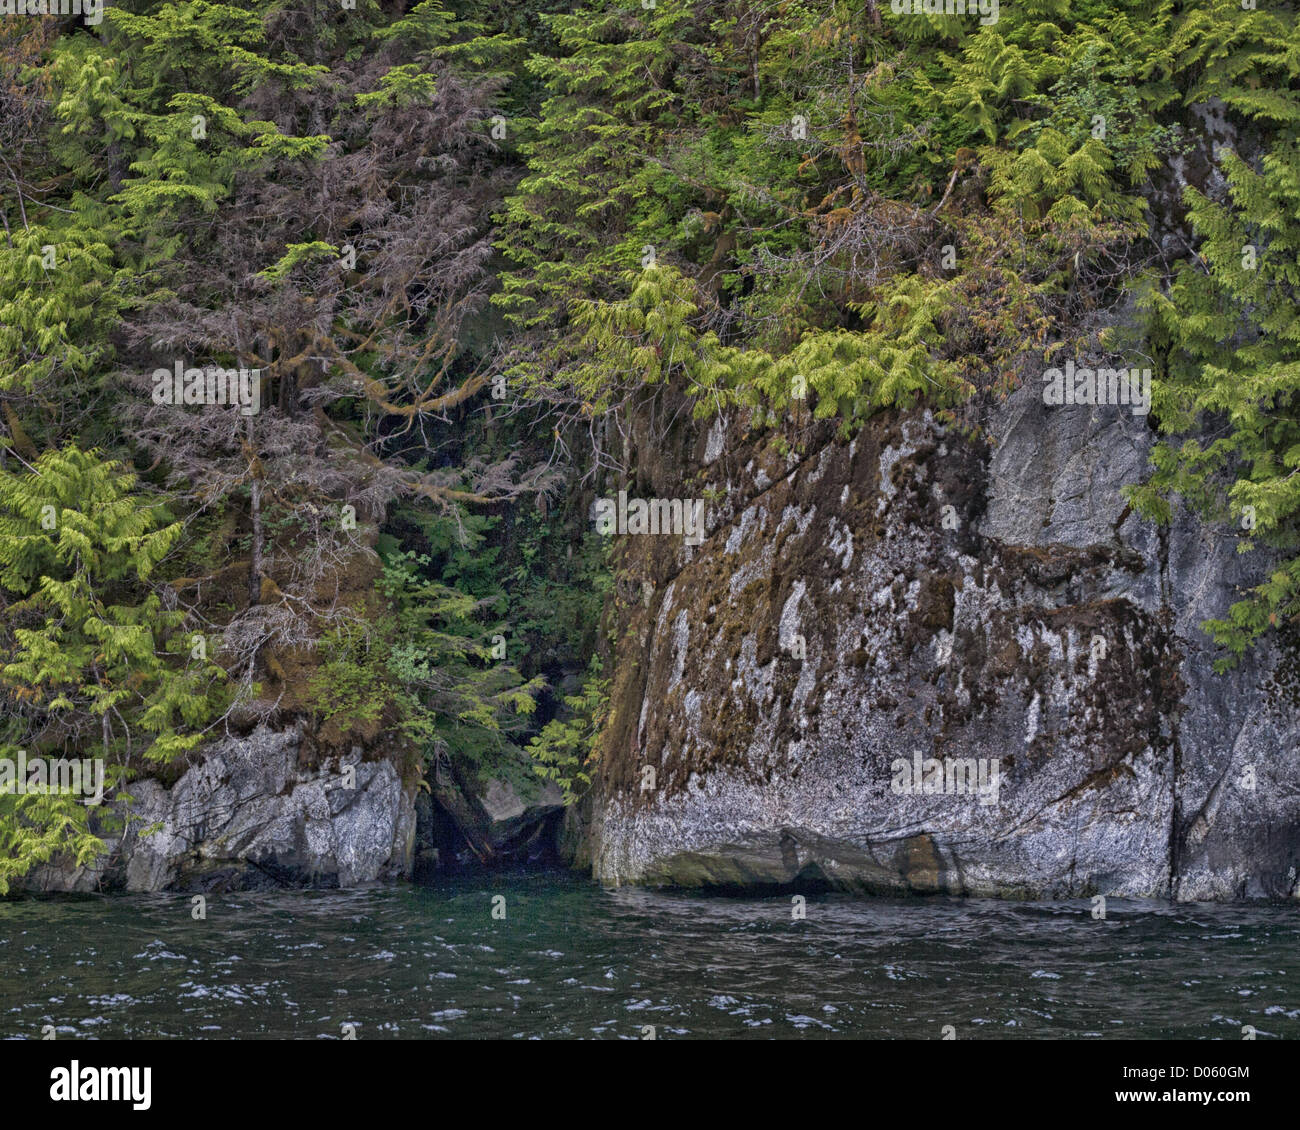 6 luglio 2012 - Gateway Ketchikan Borough, Alaska, USA - Alberi della evergreen rain forest fornire un contrappunto al 50 a 70 milioni di anni di pareti di granito scolpito da una massiccia azione di Glacier, in Misty Fjords Rudyerd Bay. Misty Fjords National Monument e area selvaggia, lungo il passaggio interno della costa sud-est di Alaska, è gestito dal governo degli STATI UNITI Forest Service e copre 2,294,343Â acri (9,246Â km) di Tongass National Forest, il più grande deserto in Alaskan foreste nazionali ed è accessibile solo da idrovolanti o barca. (Credito Immagine: © Arnold Drapkin/ZUMAPRESS.com) Foto Stock